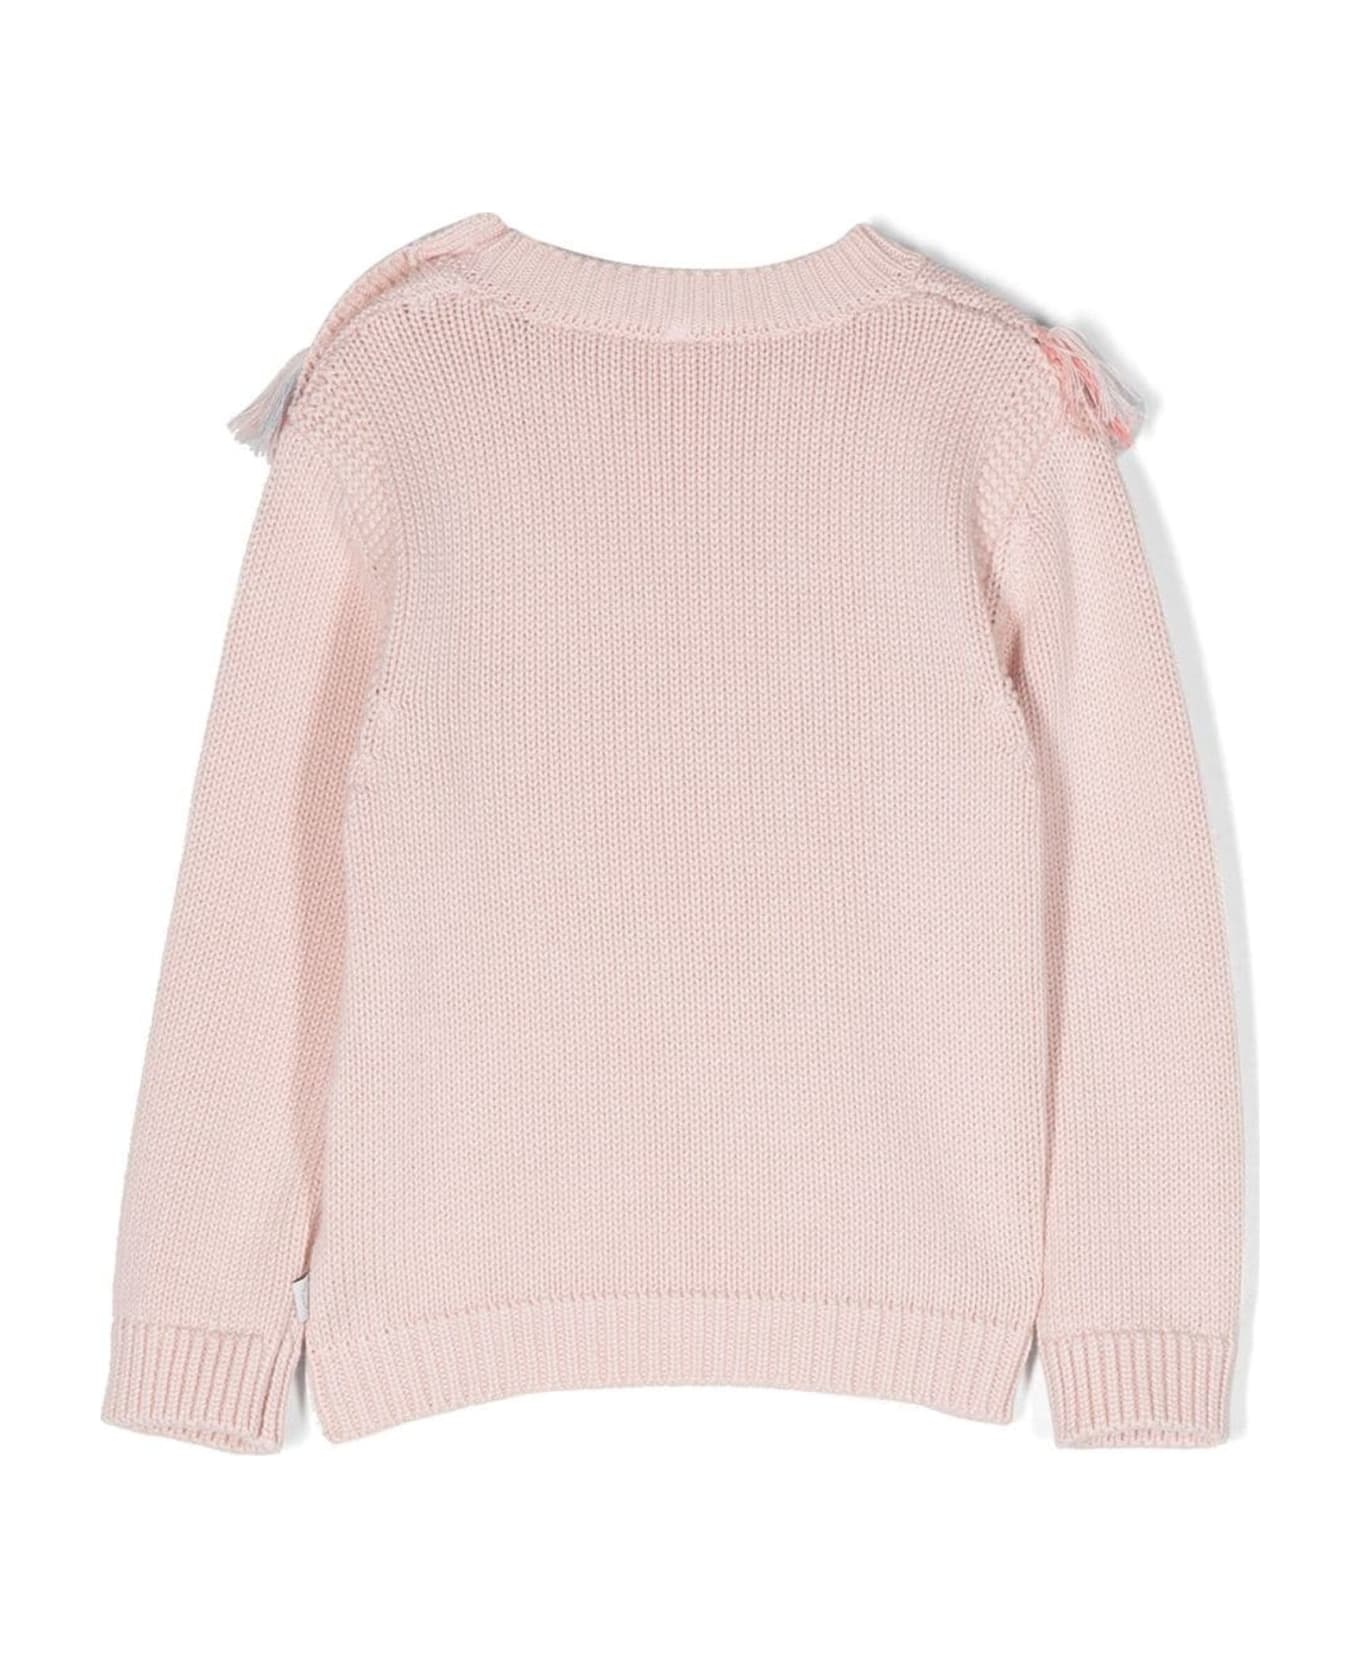 Stella McCartney Kids Sweaters Pink - Pink